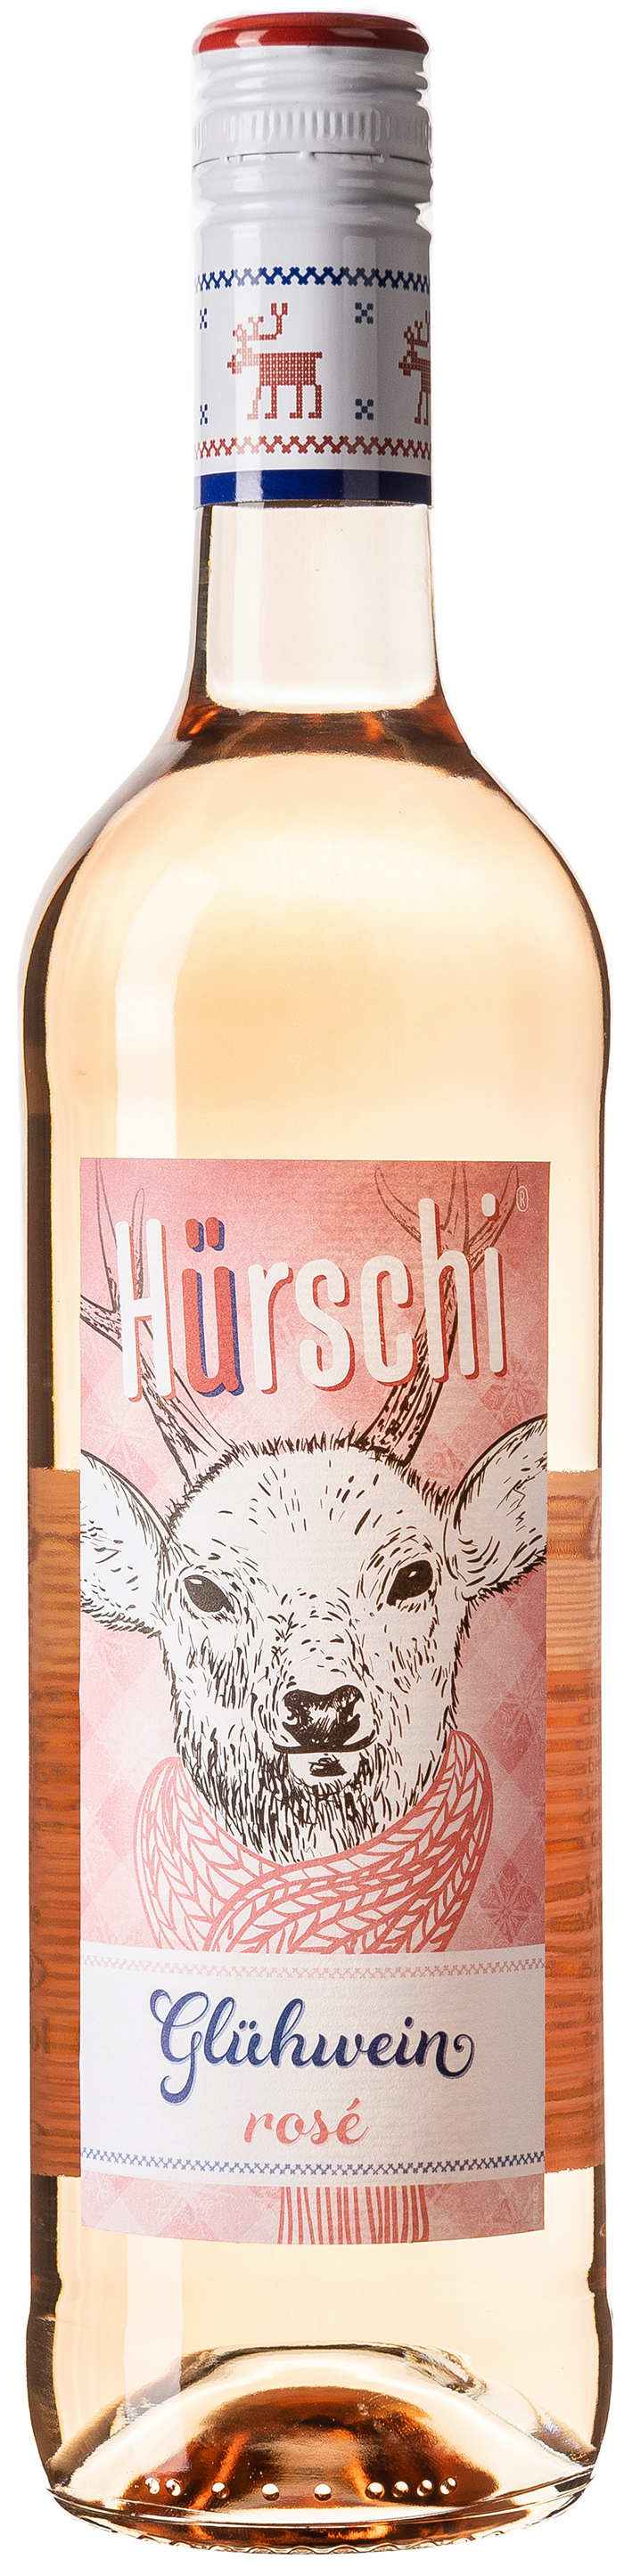 Hürschli Glühwein Rosé 10% vol. 0,75L 